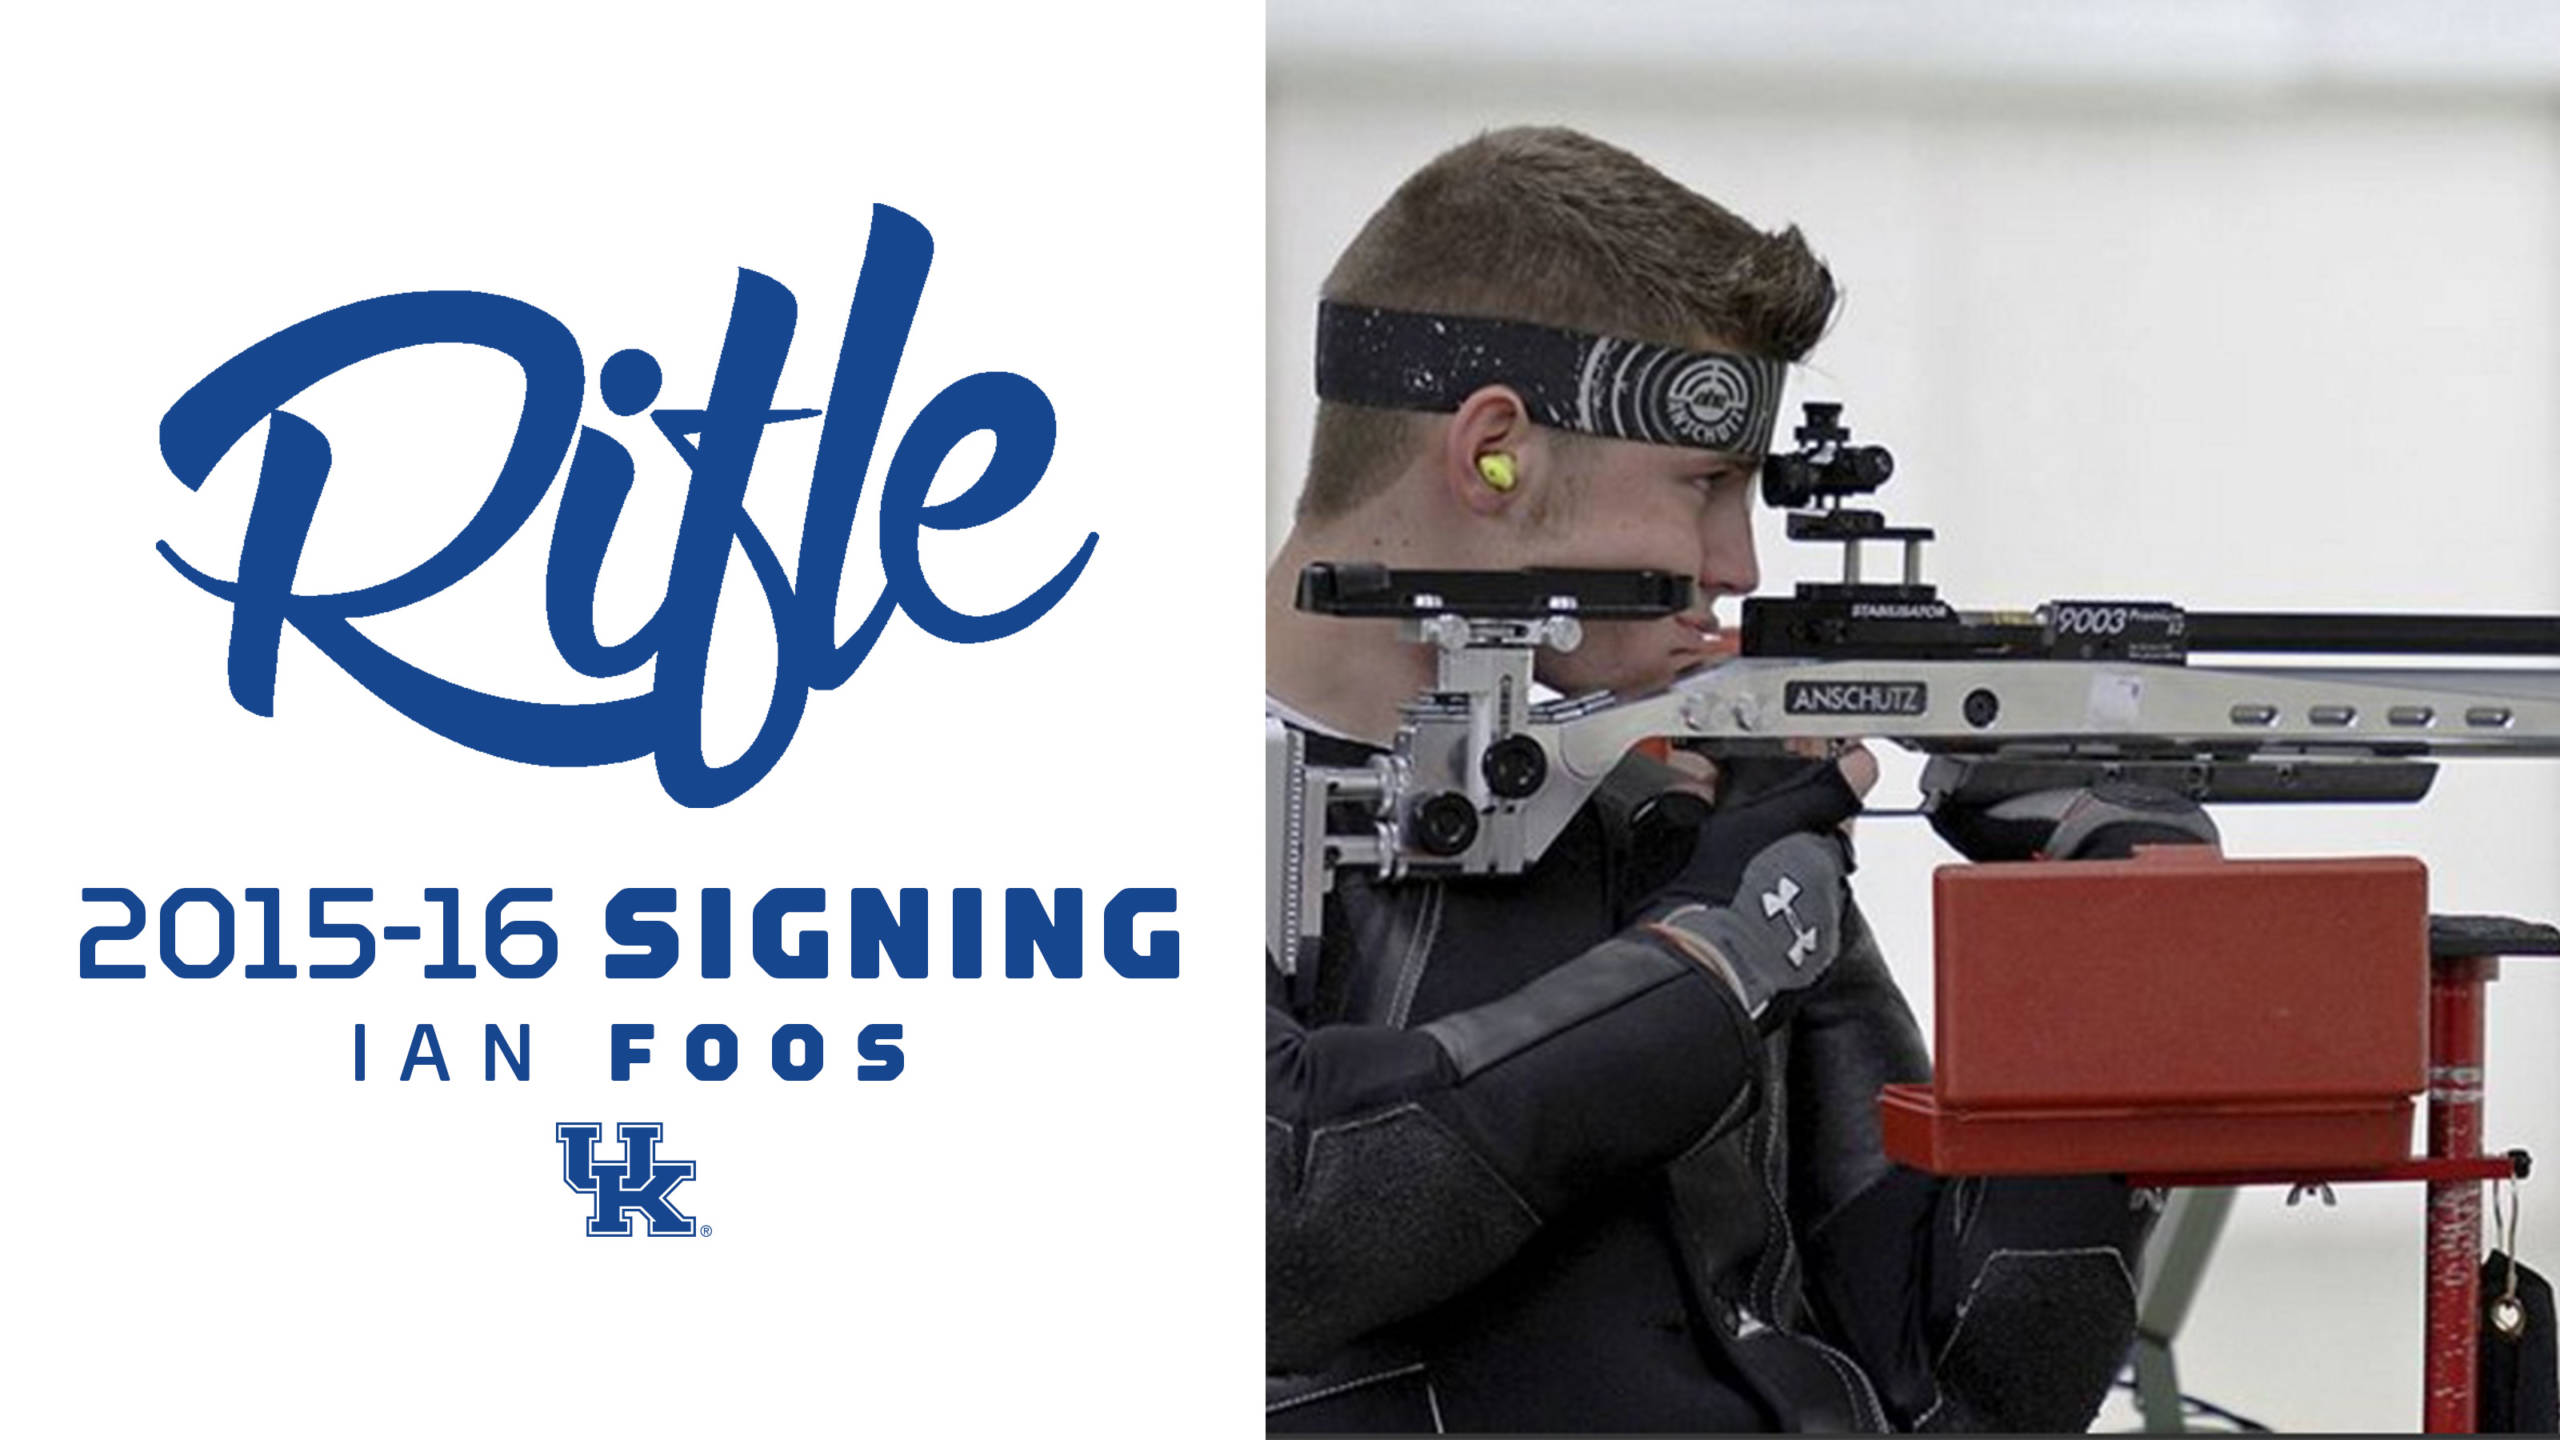 UK Rifle Signs Ian Foos to NLI